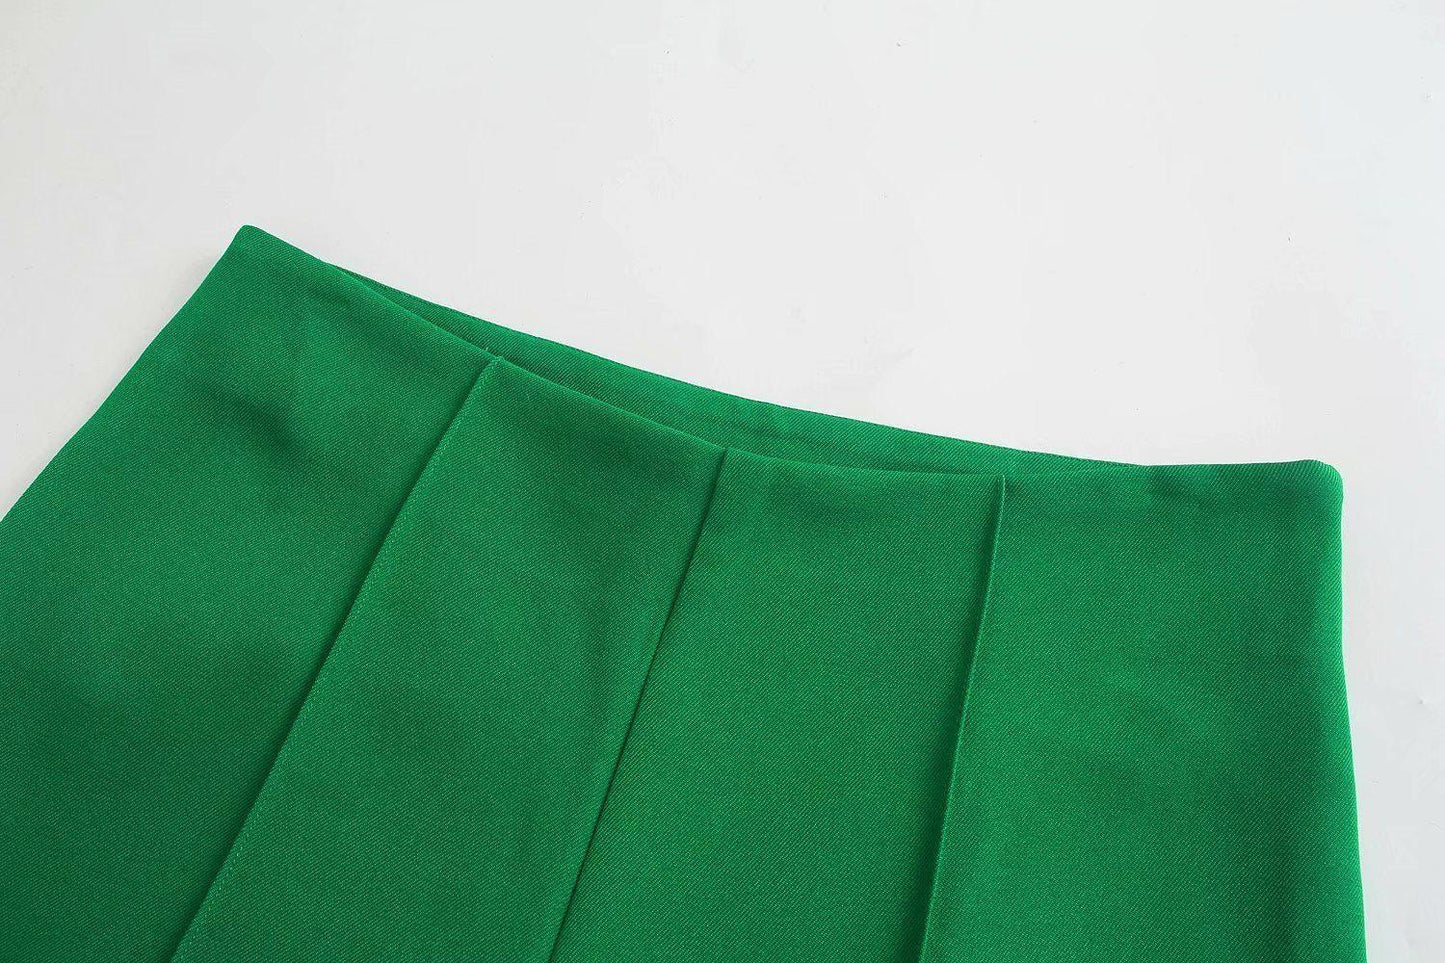 Dark Green Blazer Women - Casual - Plain-Solid - Women's Blazer - LeStyleParfait